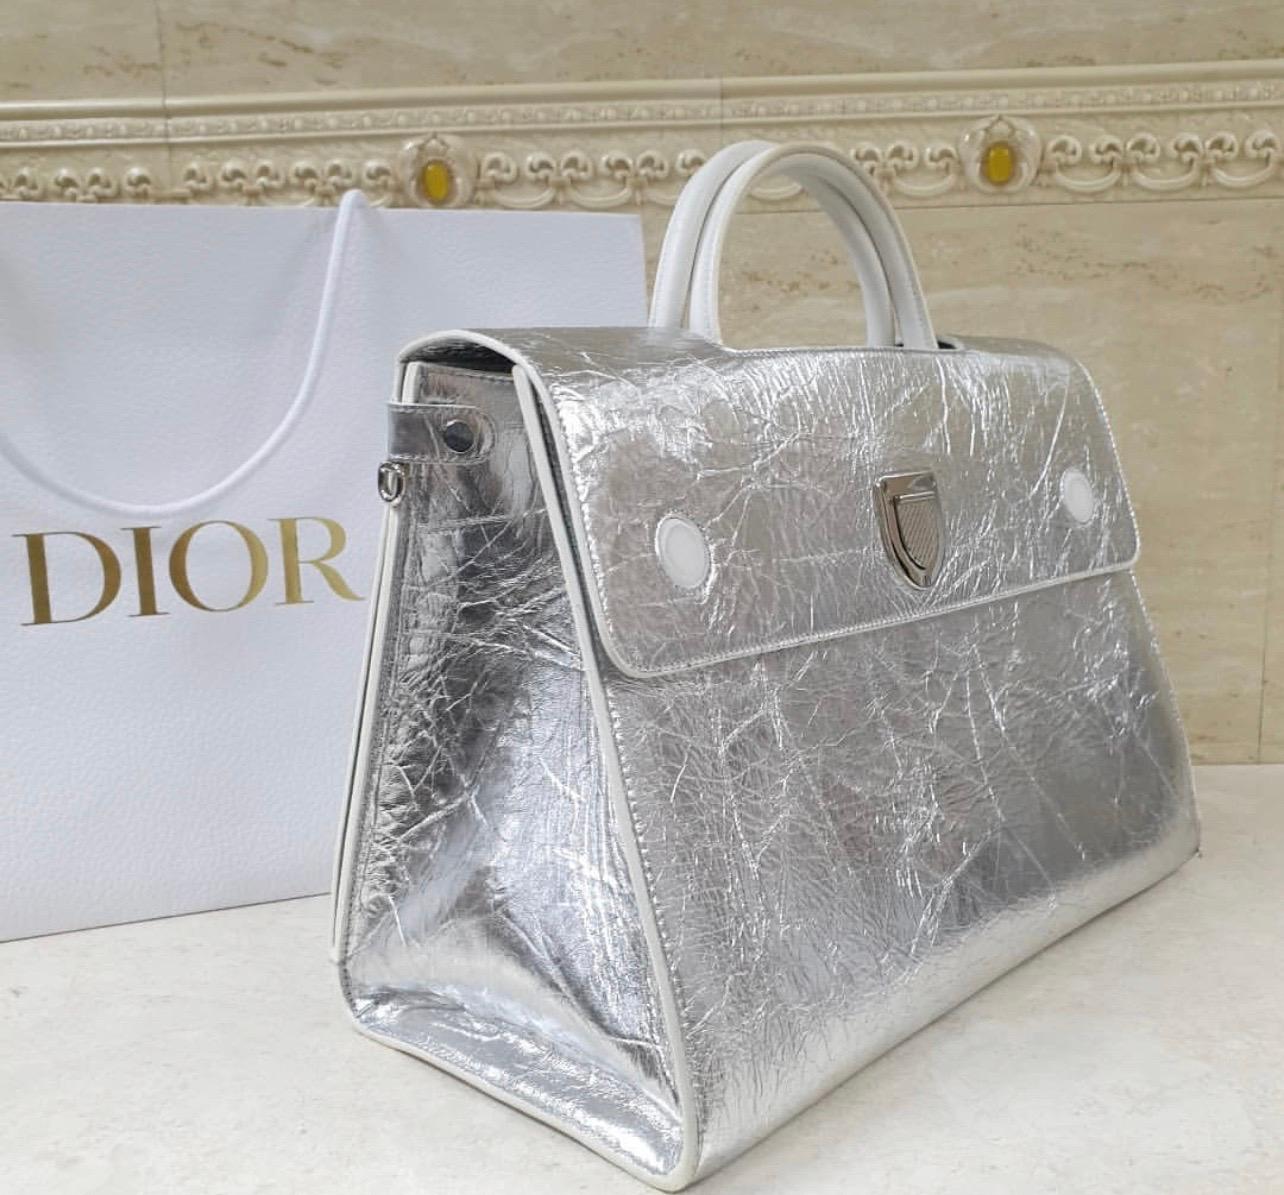 Ce sac à la mode de Christian Dior est un fourre-tout à l'allure élégante et contemporaine. Ce sac présente une silhouette très structurée et des éléments de fixation originaux. 
La fermeture à poussoir en forme de croissant attire l'attention et le